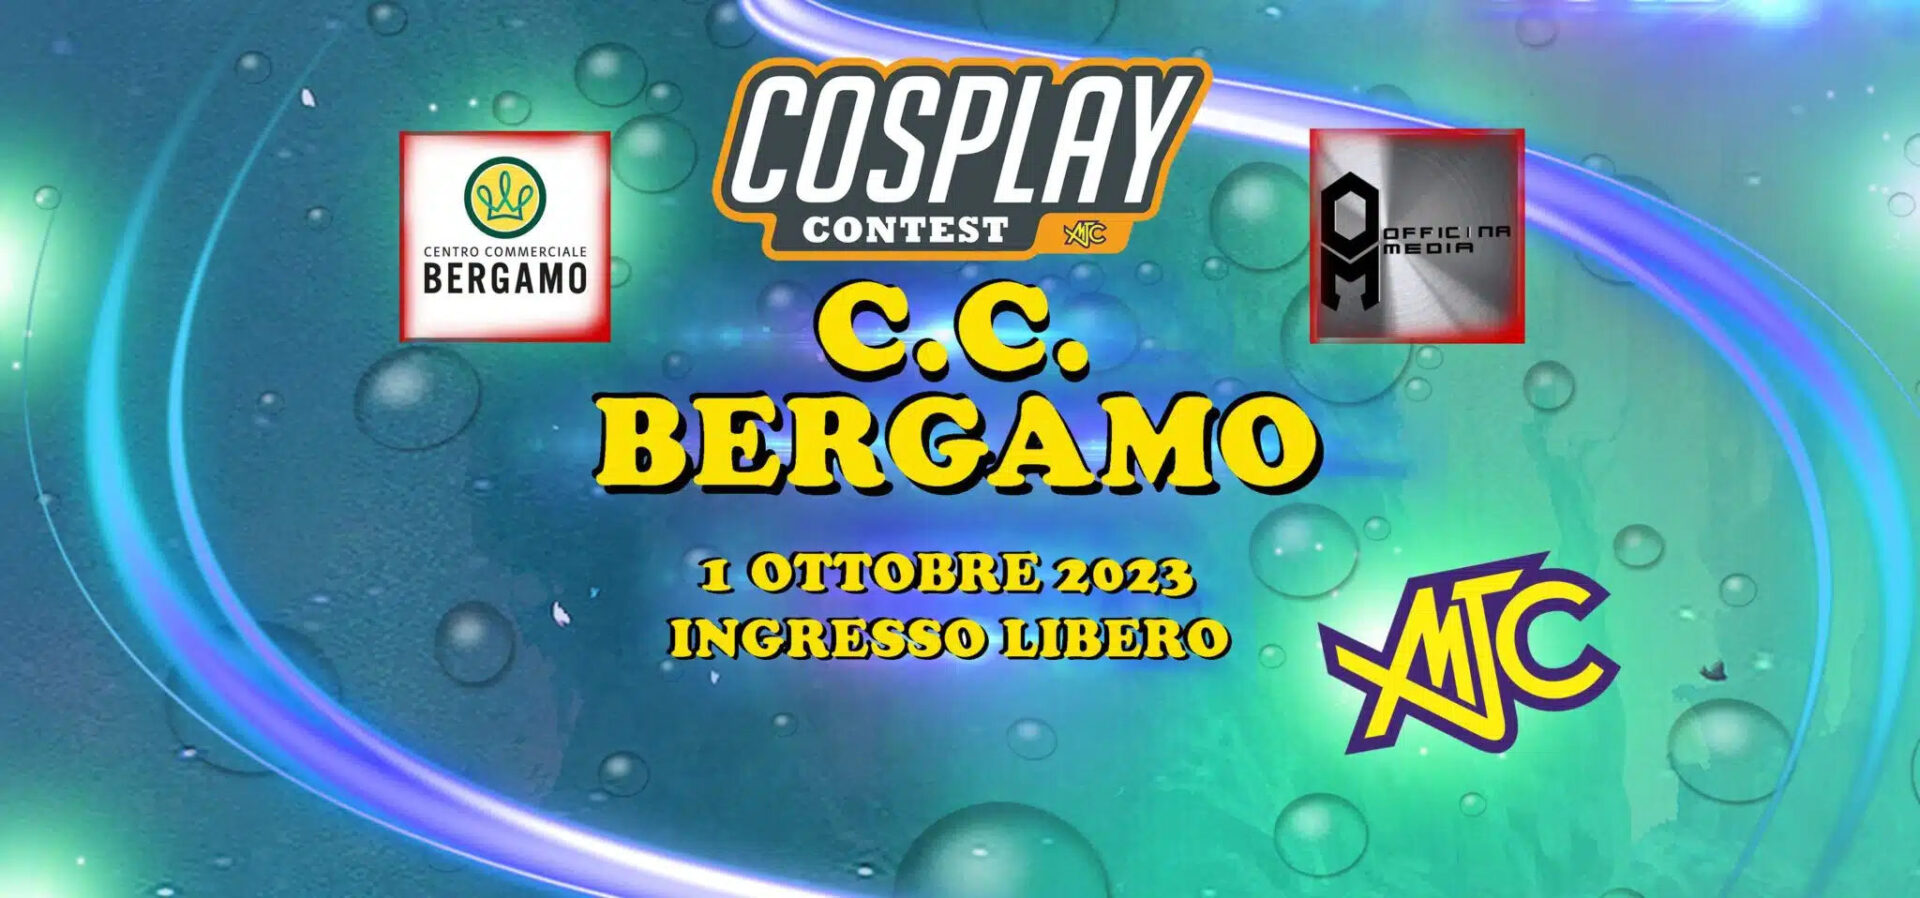 Cosplay Contest al Centro Commerciale Bergamo